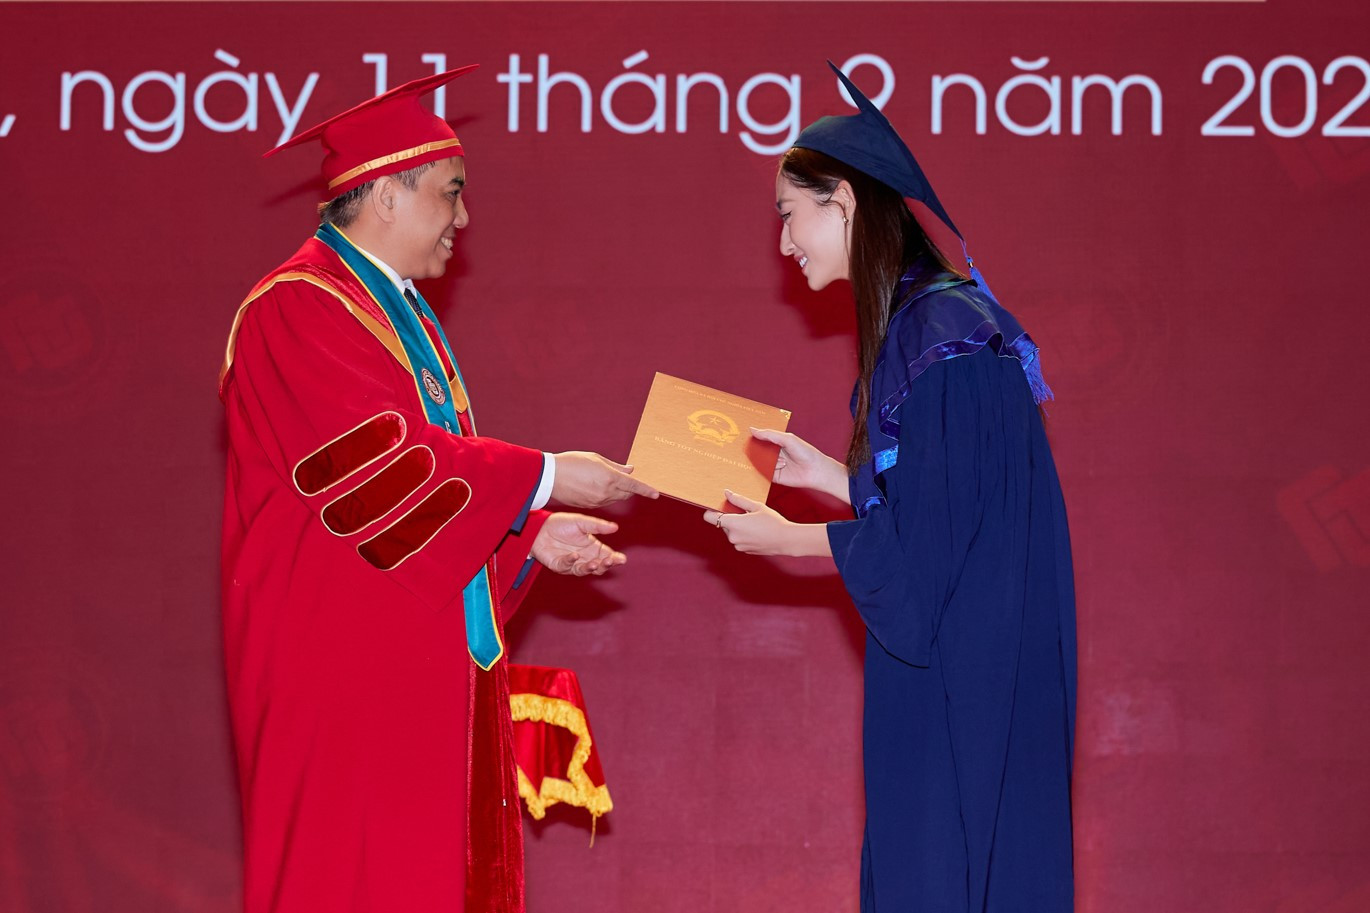 Hoa hậu Lương Thùy Linh nhận bằng tốt nghiệp xuất sắc của ĐH Ngoại thương